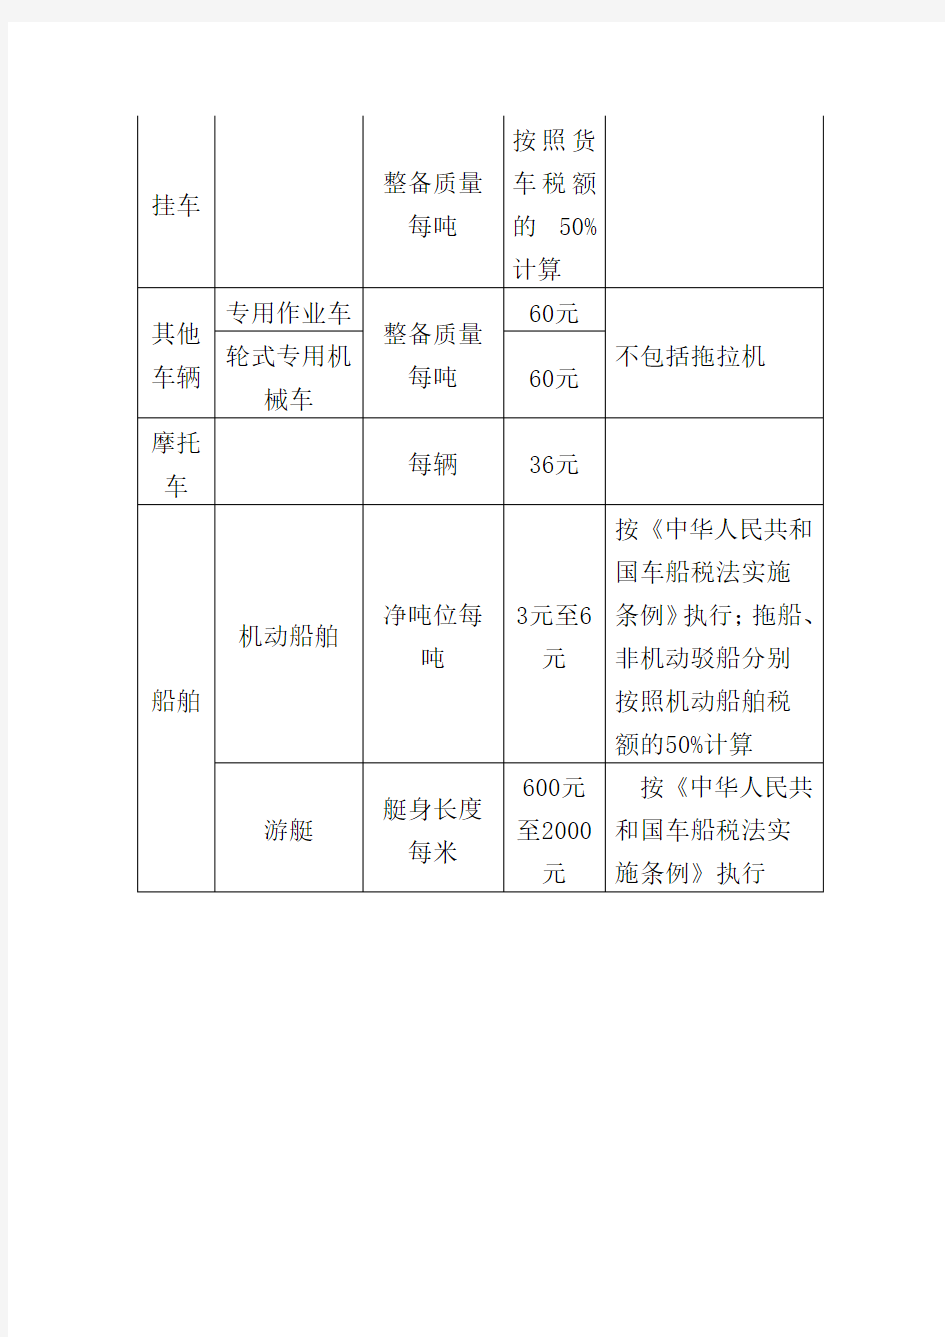 广西壮族自治区车船税税目税额表